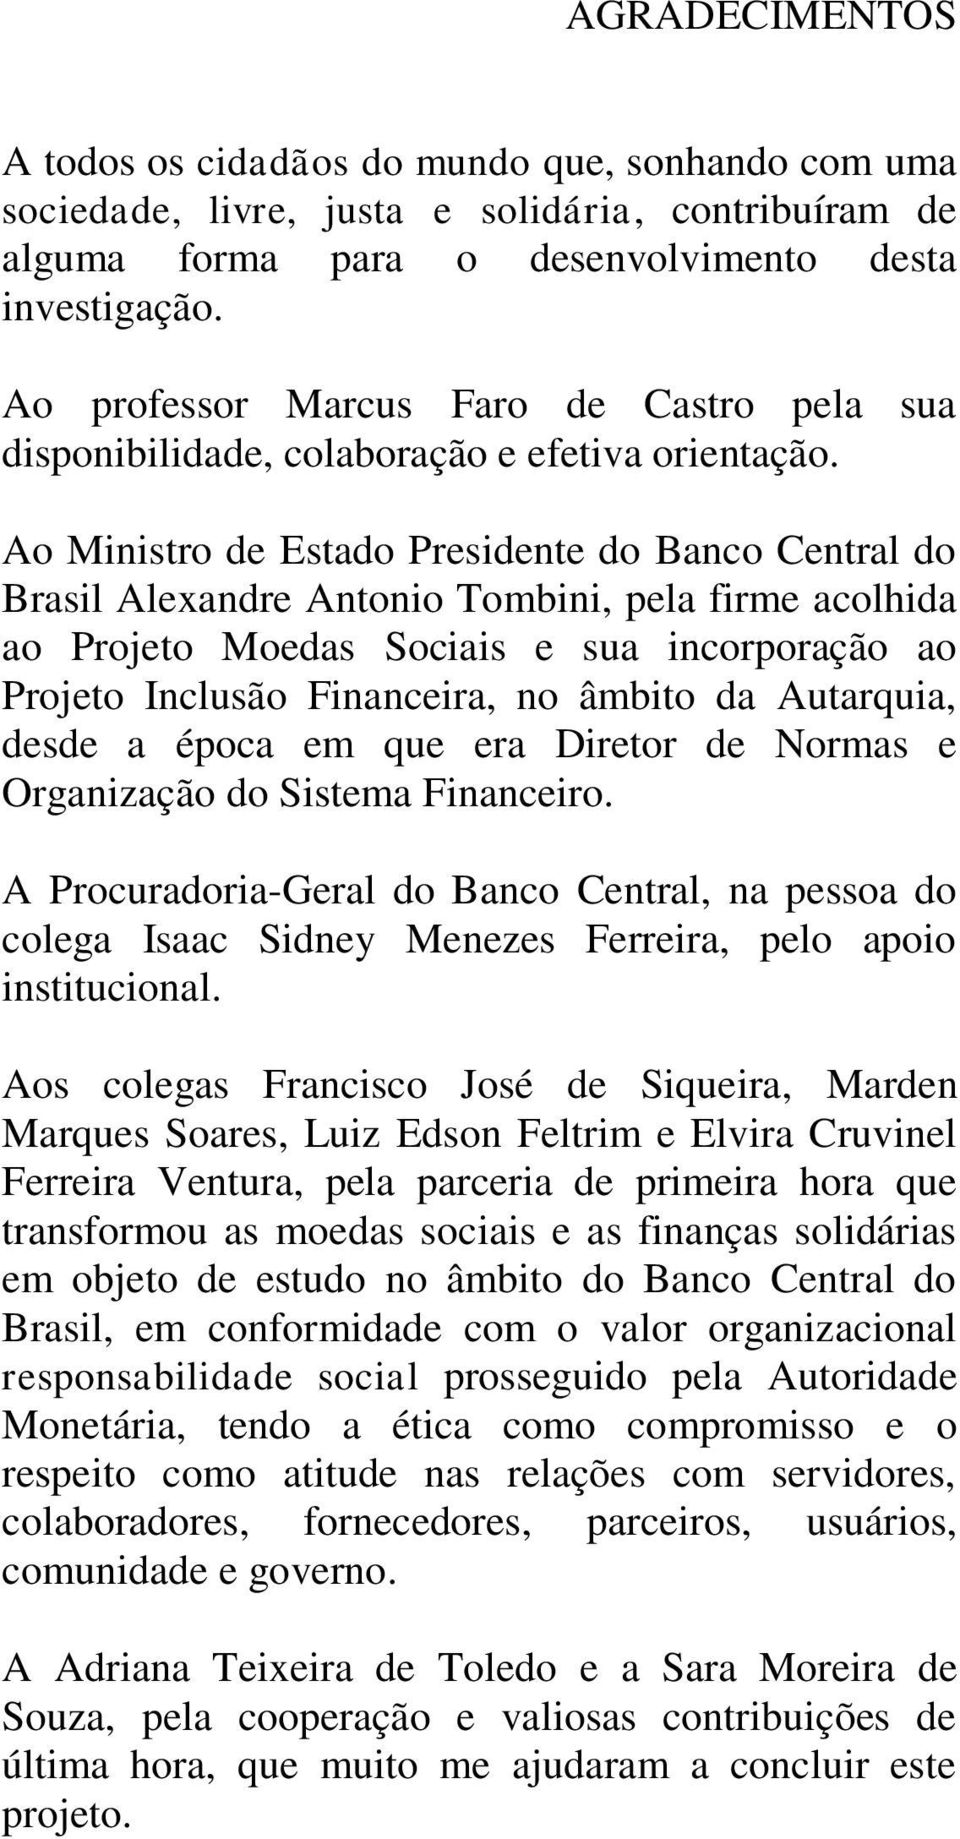 Ao Ministro de Estado Presidente do Banco Central do Brasil Alexandre Antonio Tombini, pela firme acolhida ao Projeto Moedas Sociais e sua incorporação ao Projeto Inclusão Financeira, no âmbito da